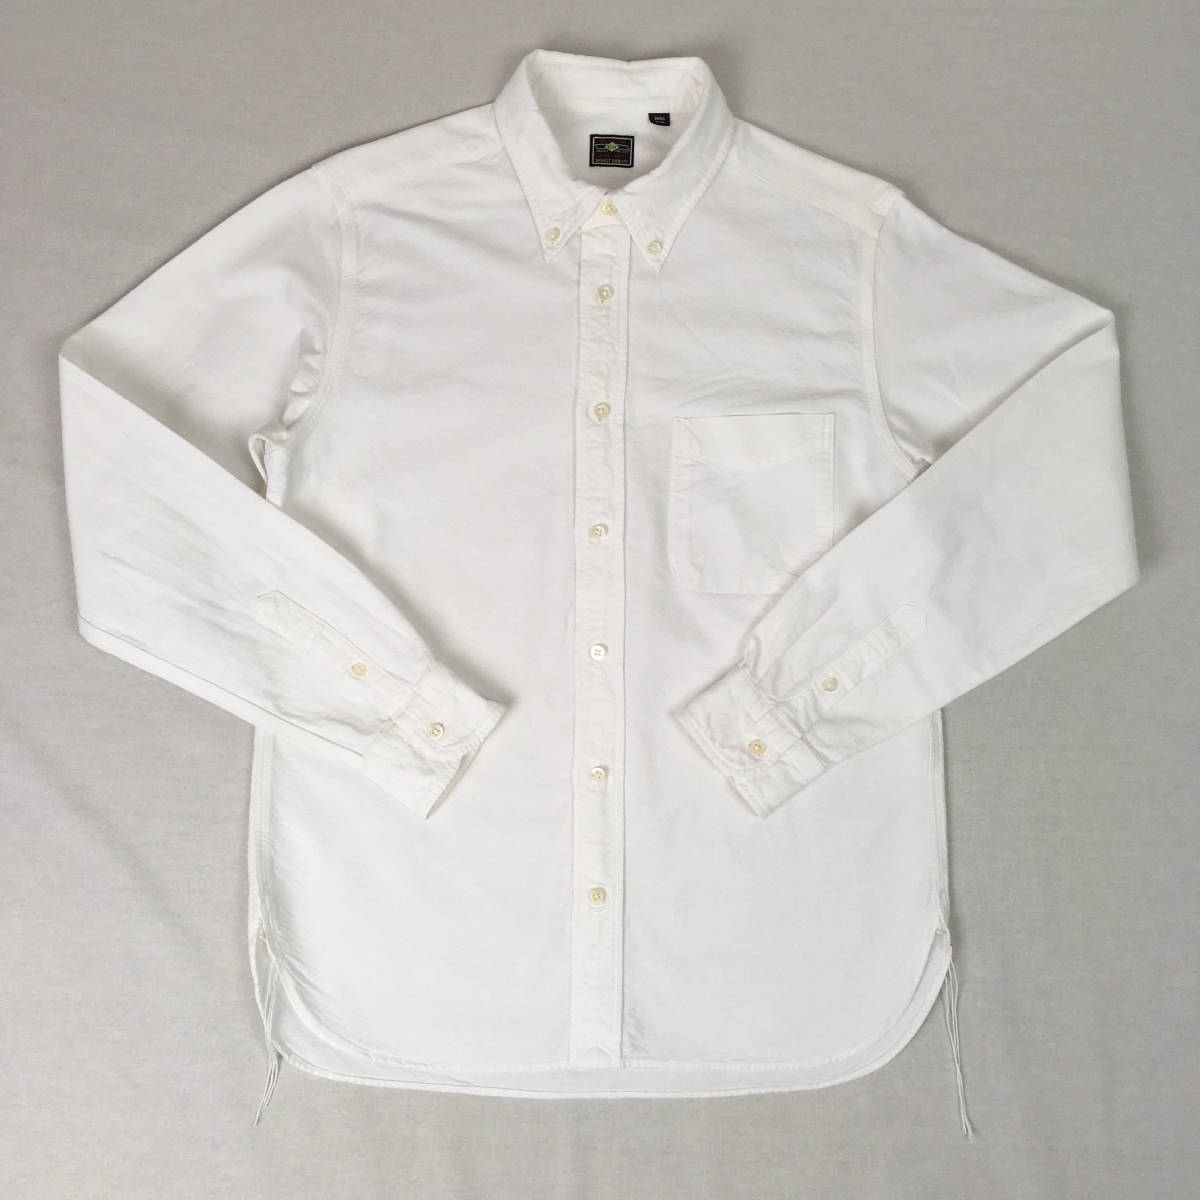 SUGAR CANE シュガーケーン SC27198 日本製 オックスフォード ボタンダウン シャツ Sサイズ ホワイト 長袖の画像1